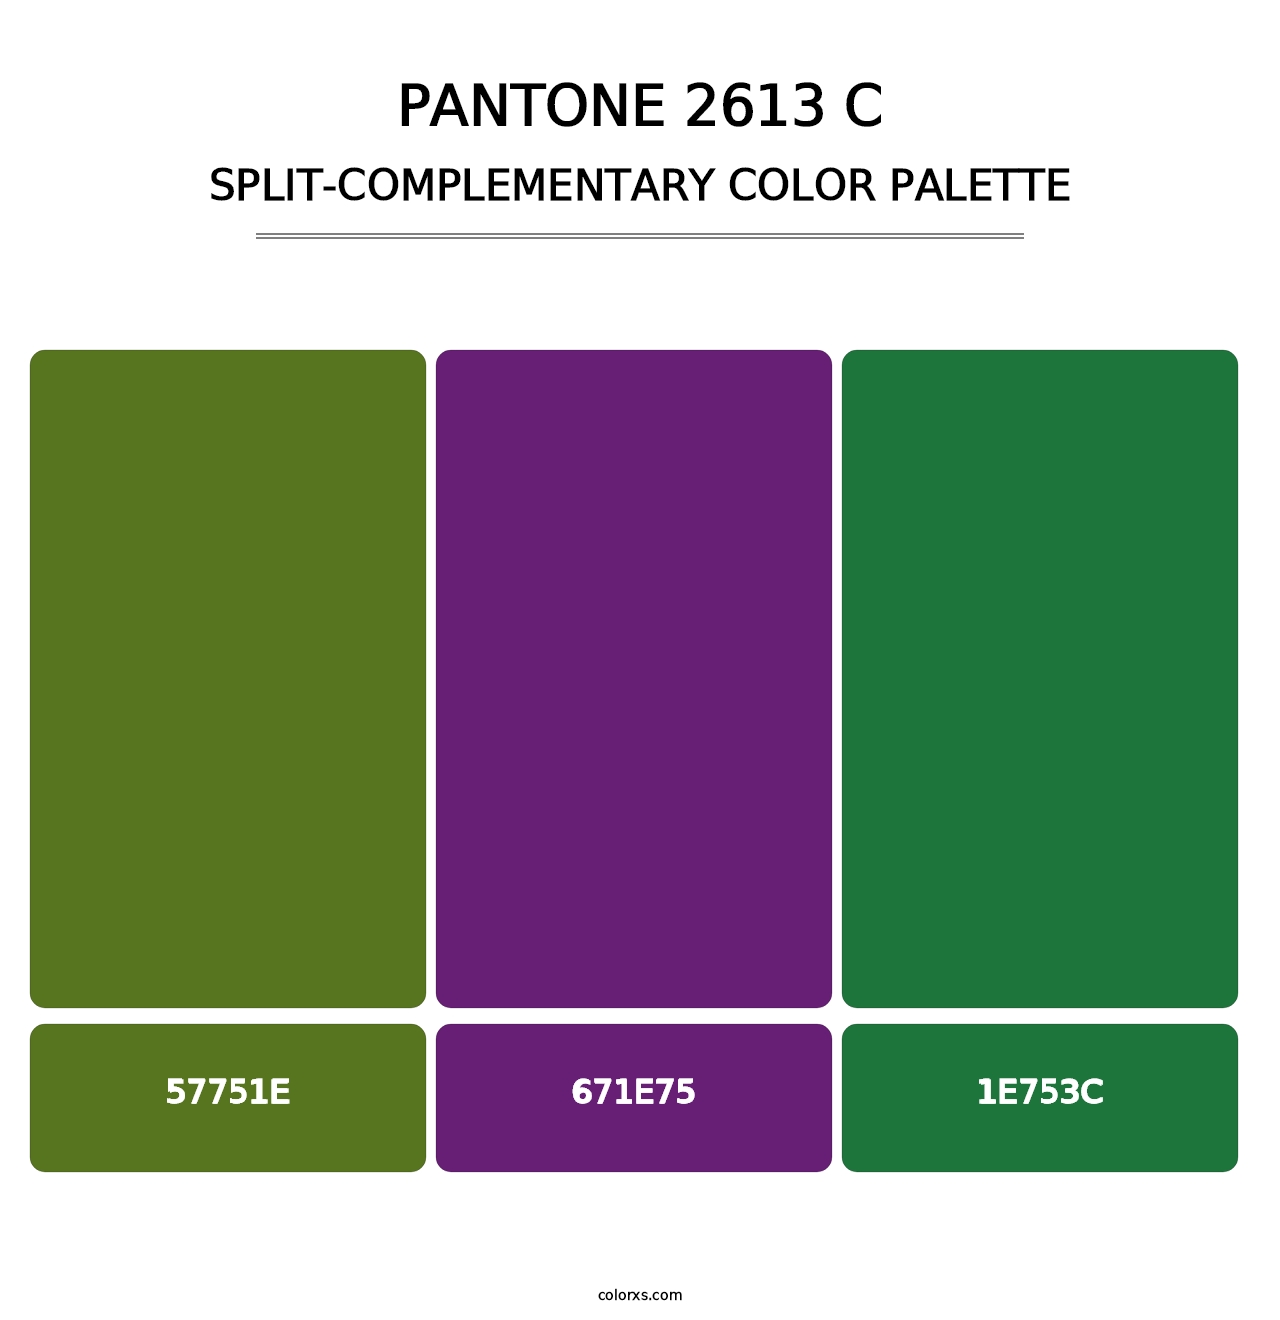 PANTONE 2613 C - Split-Complementary Color Palette